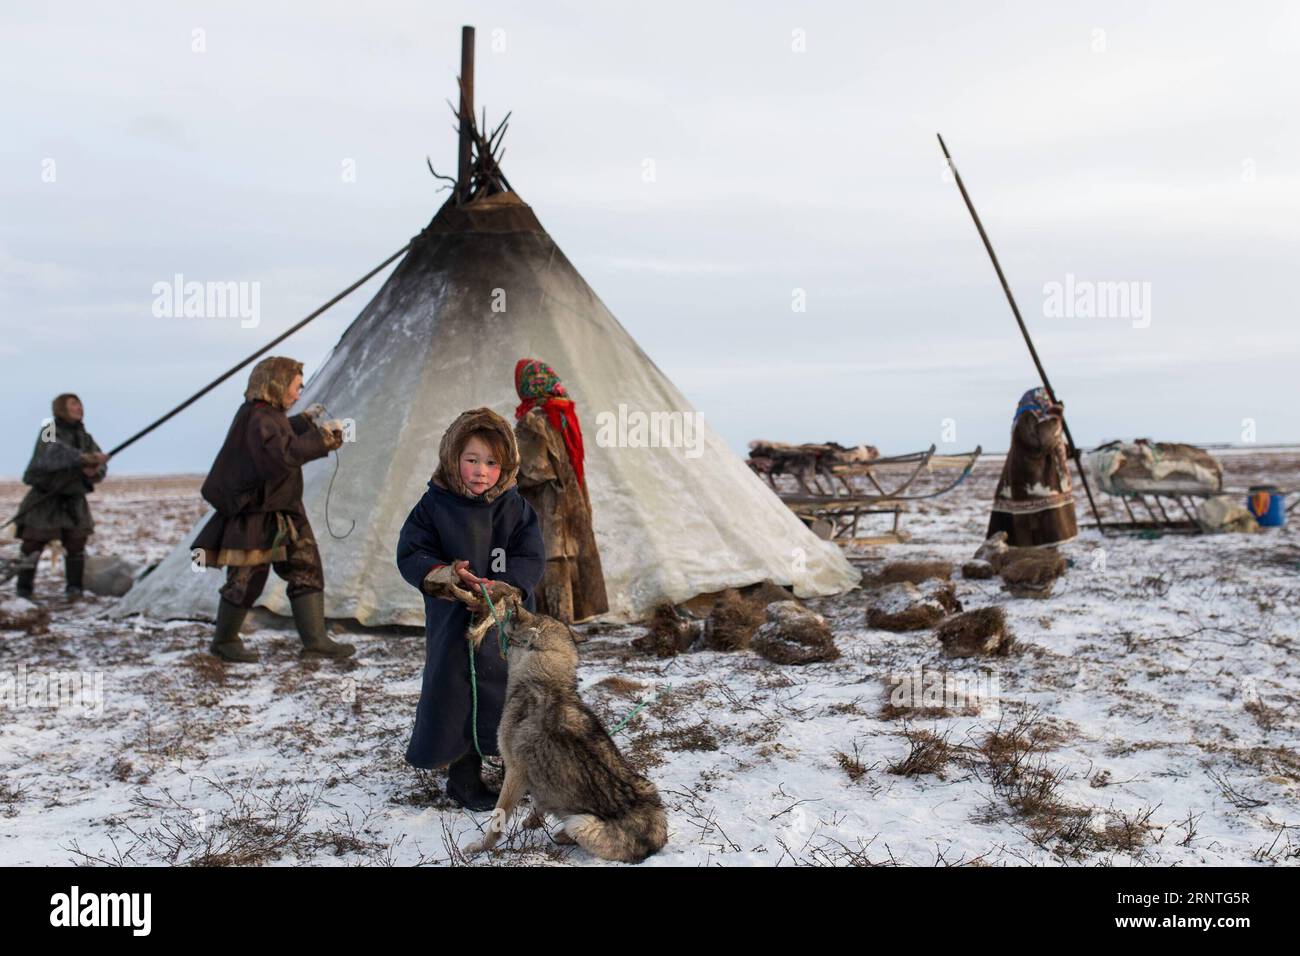 (171109) -- SALEKHARD (RUSSLAND), 9. November 2017 -- Ein Nenets-Mädchen steht am 4. November 2017 vor ihrem Lager, etwa 200 km von Salekhard, Russland. Die Nenets sind ein indigenes Volk im nördlichen arktischen Russland. Nach der jüngsten Volkszählung im Jahr 2010 gibt es in der Russischen Föderation etwa 45.000 Nenzen, die meisten von ihnen leben im autonomen Okrug der Yamalo-Nenzen und im autonomen Okrug der Nenzen. (whw) RUSSIA-SALEKHARD-DAILY LIFE-NENETS BaixXueqi PUBLICATIONxNOTxINxCHN Stockfoto